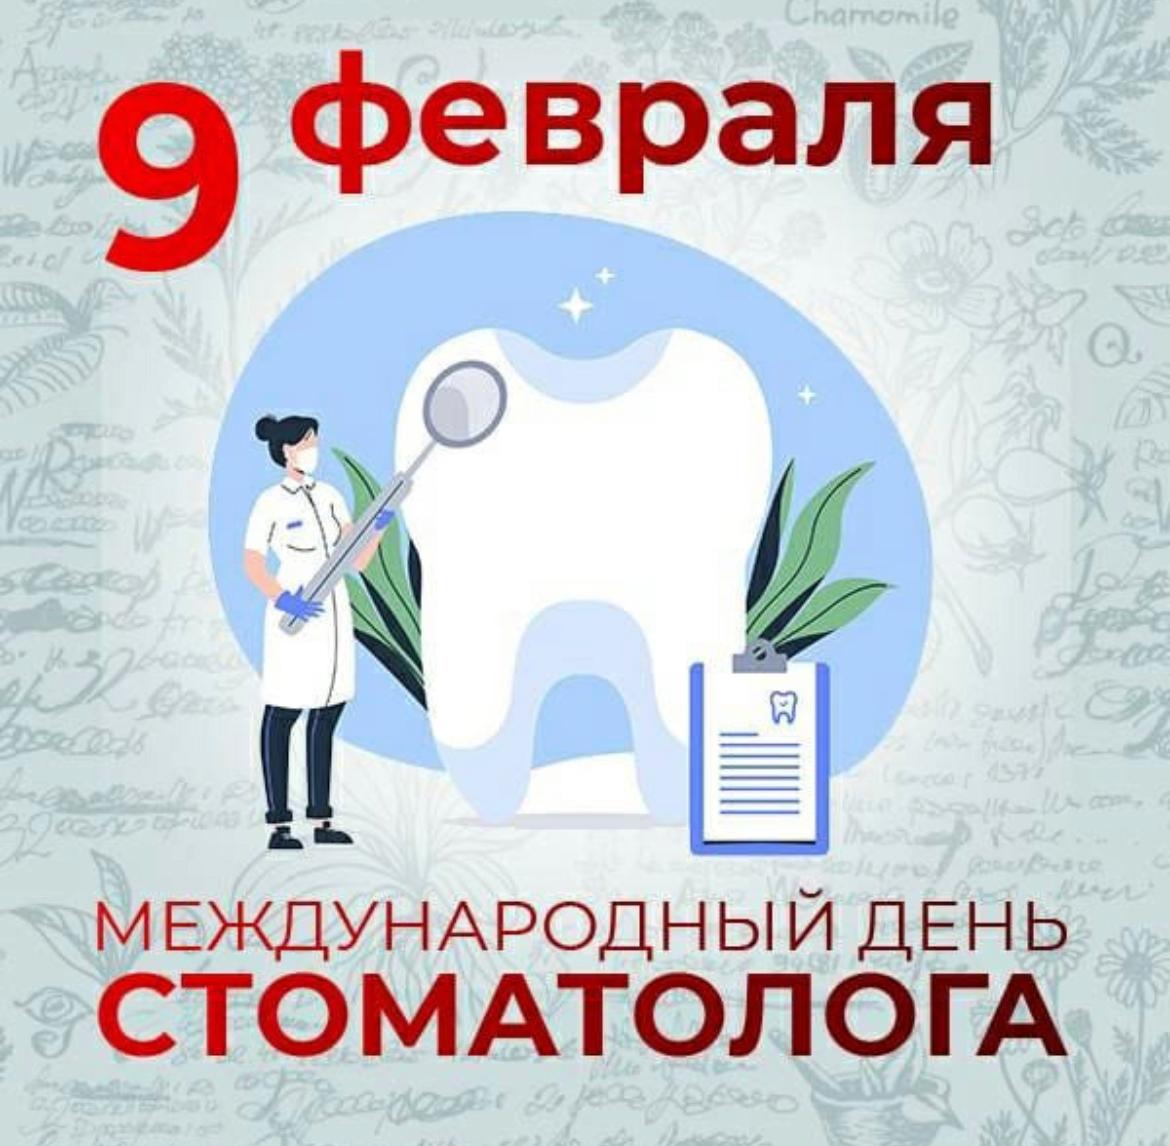 9 Февраля Международный день стоматолога